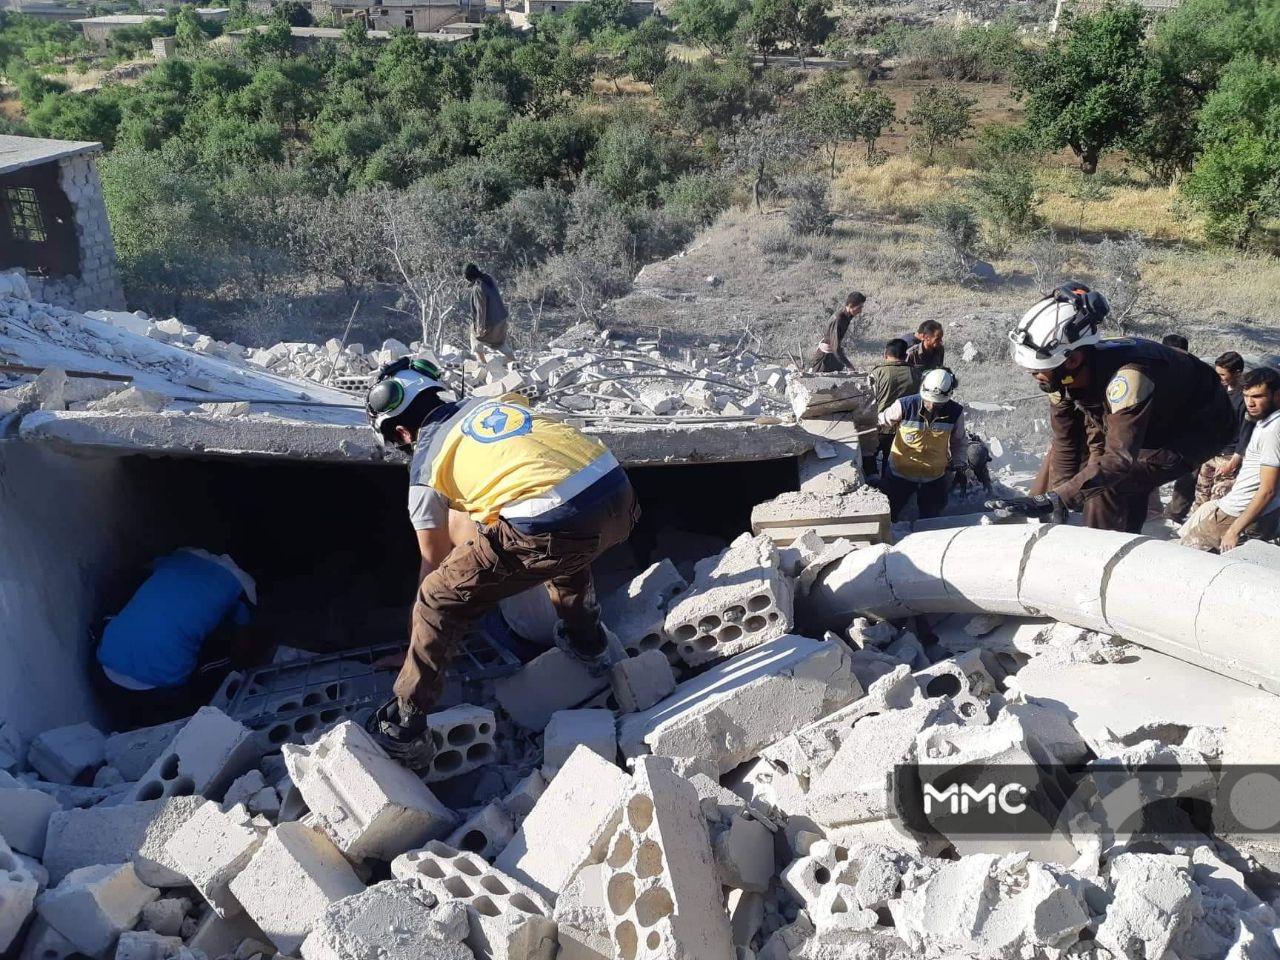 حصاد أخبار الأربعاء - عشرات الشهداء والجرحى في قصف هستيري جنوب إدلب، وناشطون يدعون إلى حملة لكسر الحدود باتجاه أوربا -(29-5-2019)